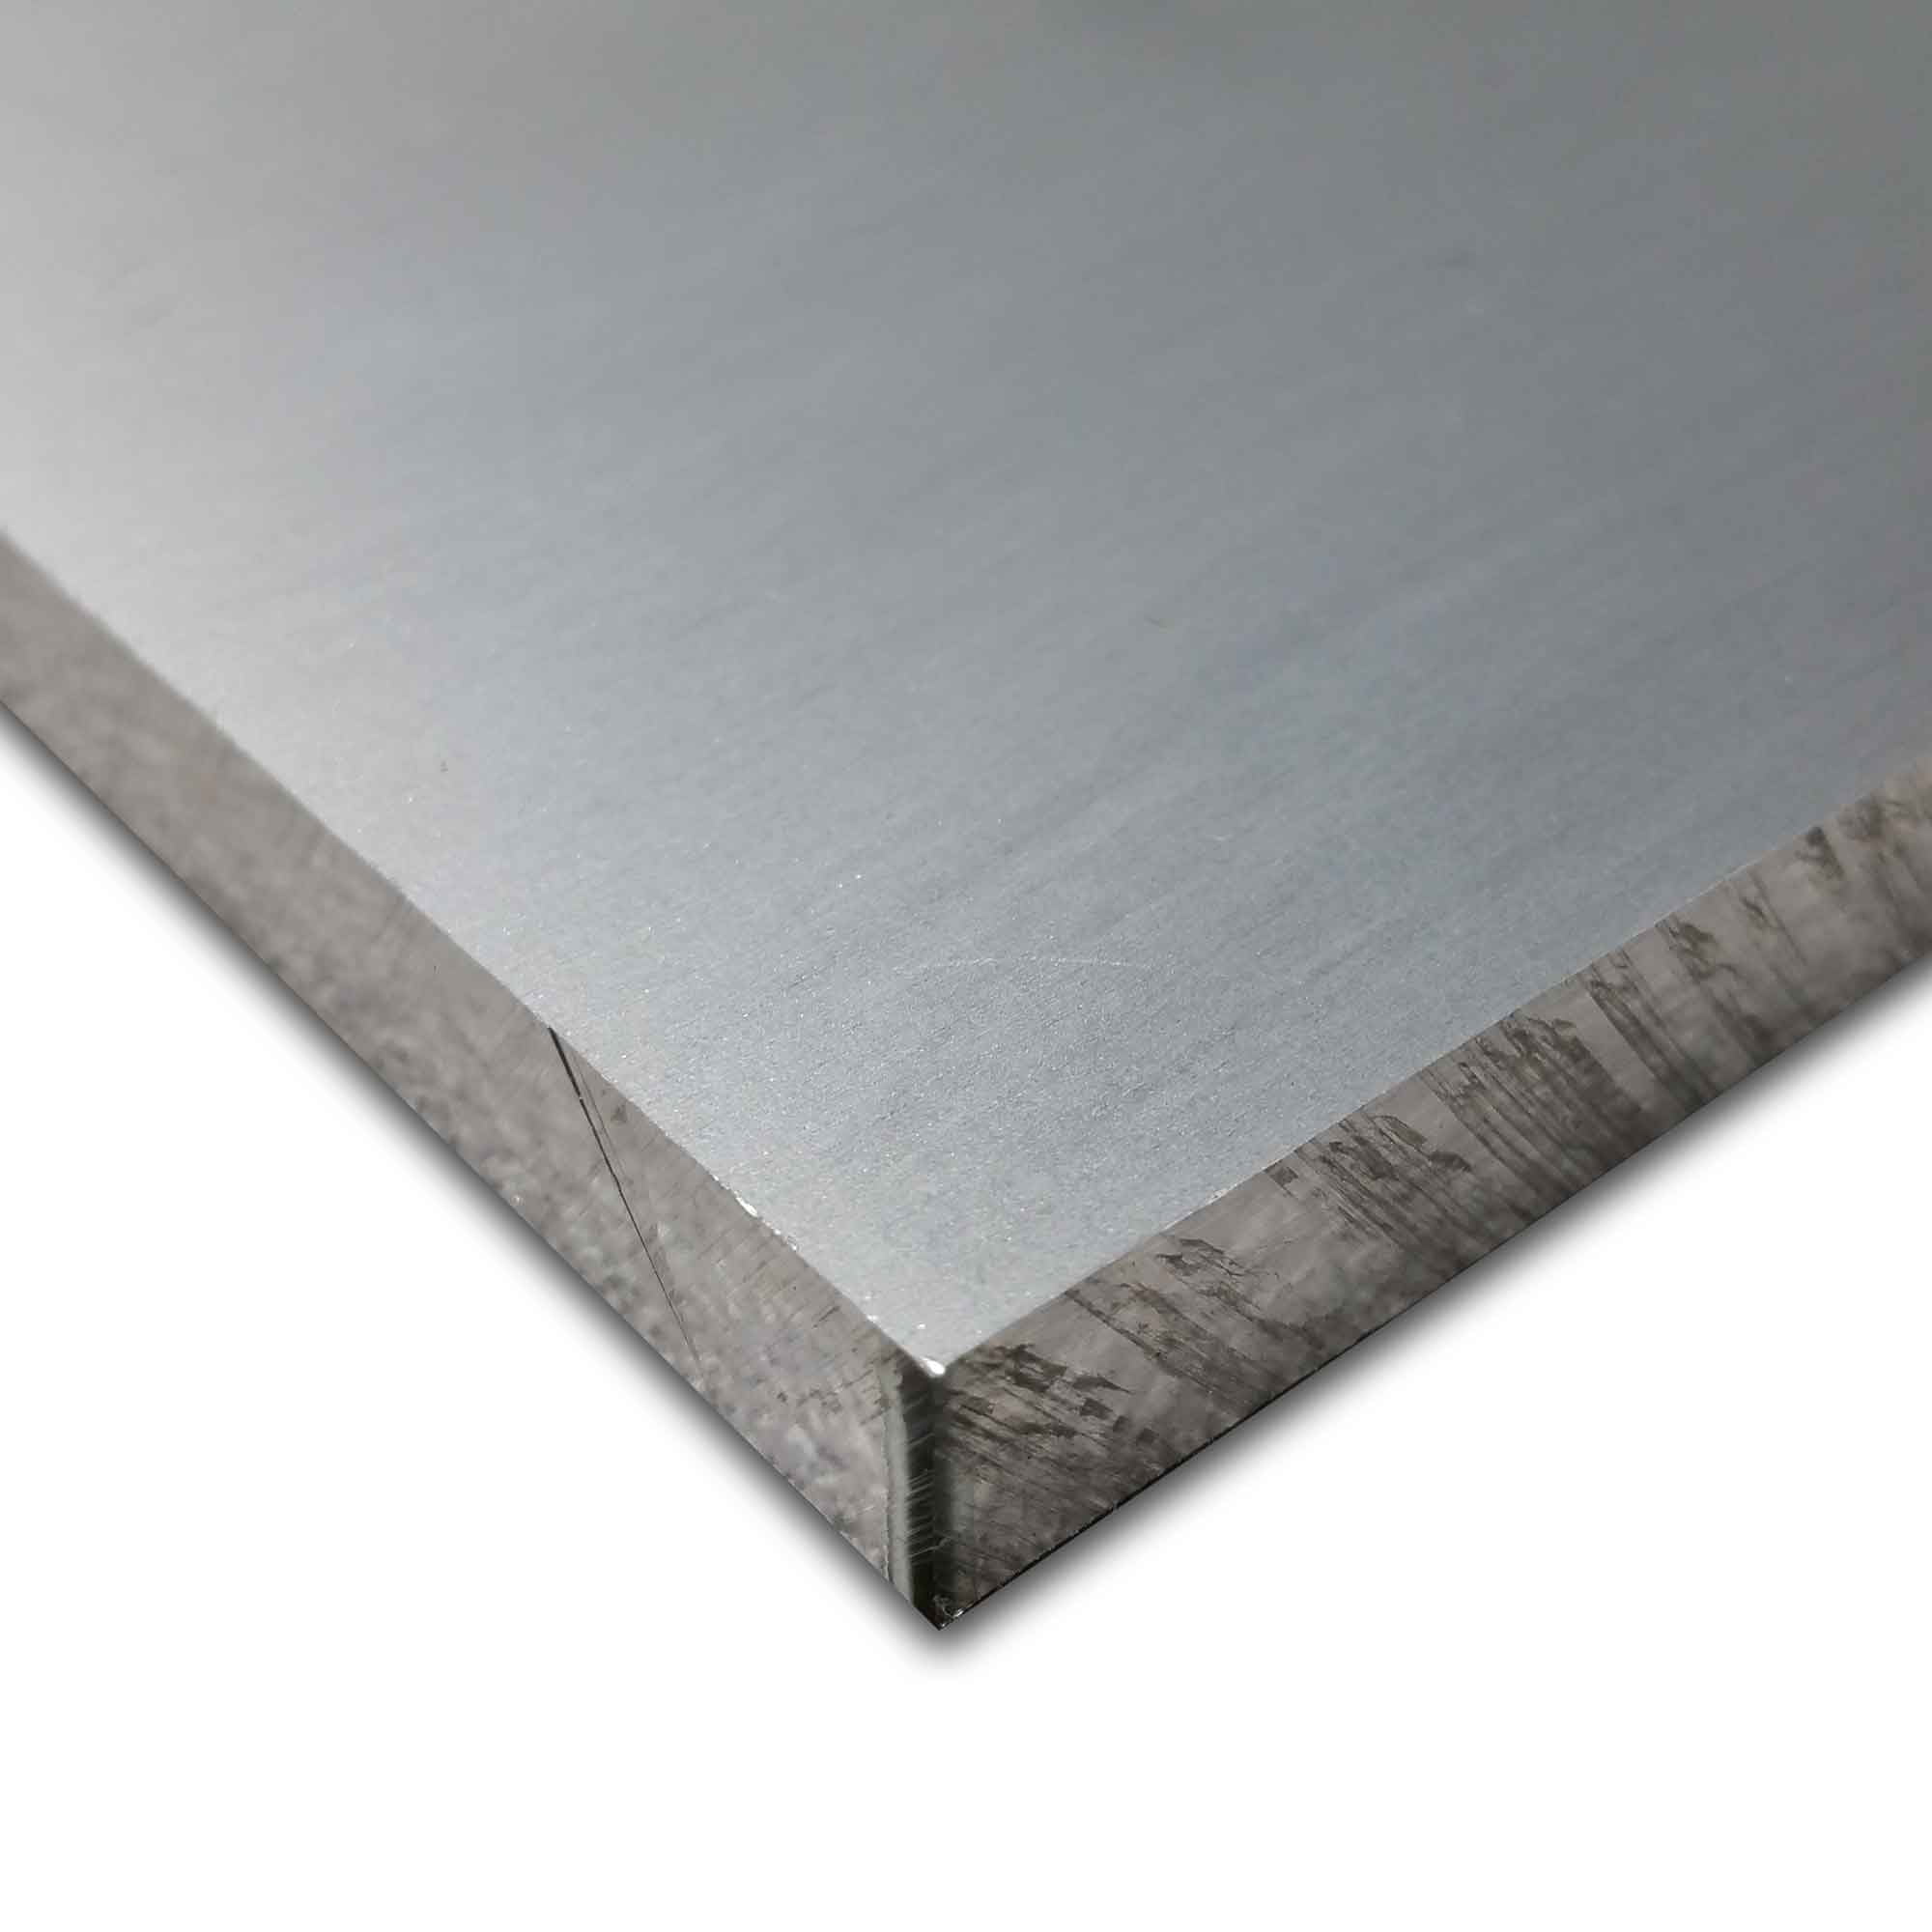 T6511 Mill Stock 6061 Plate 0.625 5/8" x 3" Aluminum Flat Bar 12" Length 